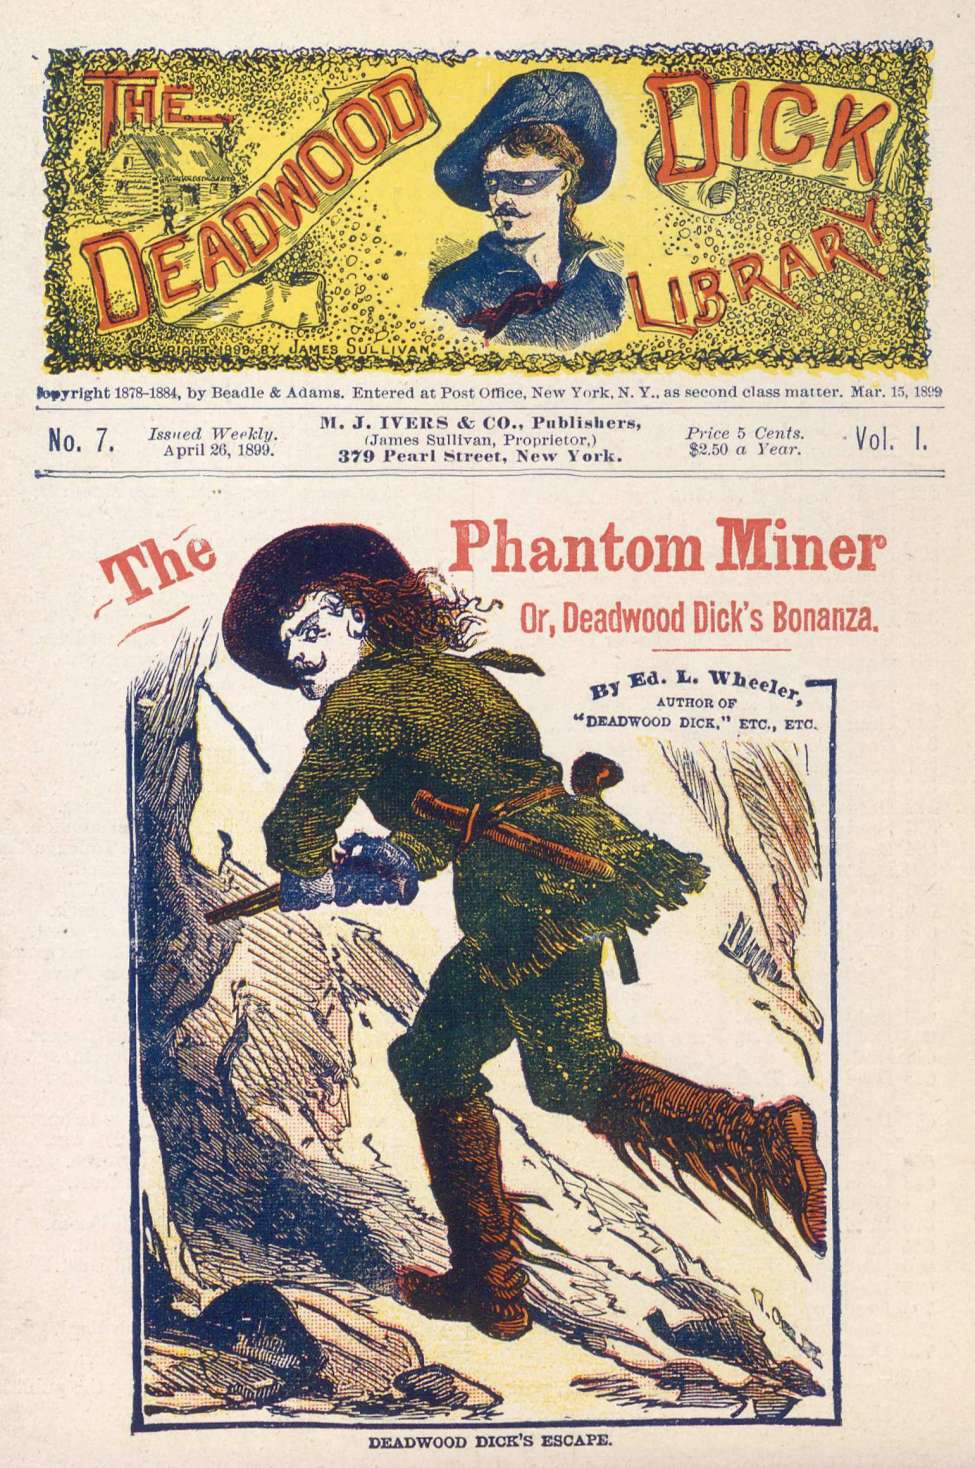 Book Cover For Deadwood Dick Library v1 7 - The Phantom Miner